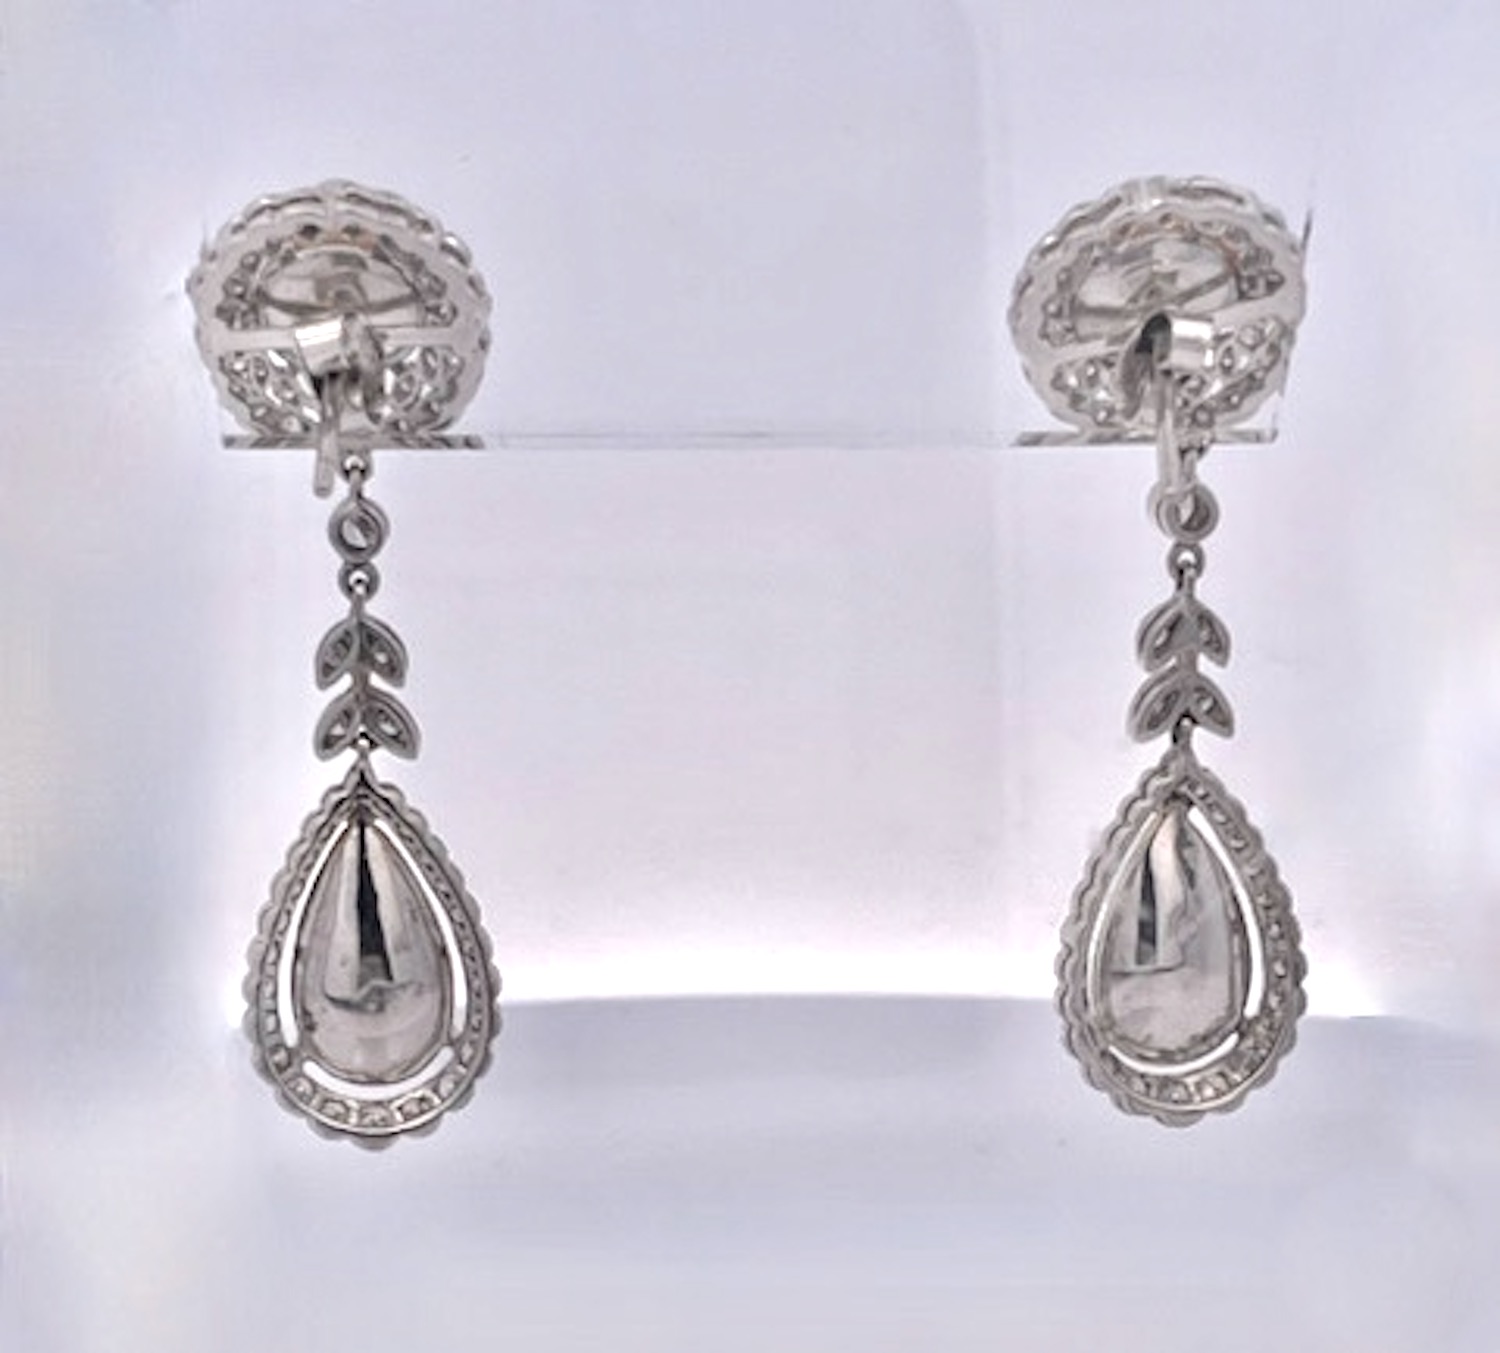 Jelly Opal Diamond Drop Earrings 18K